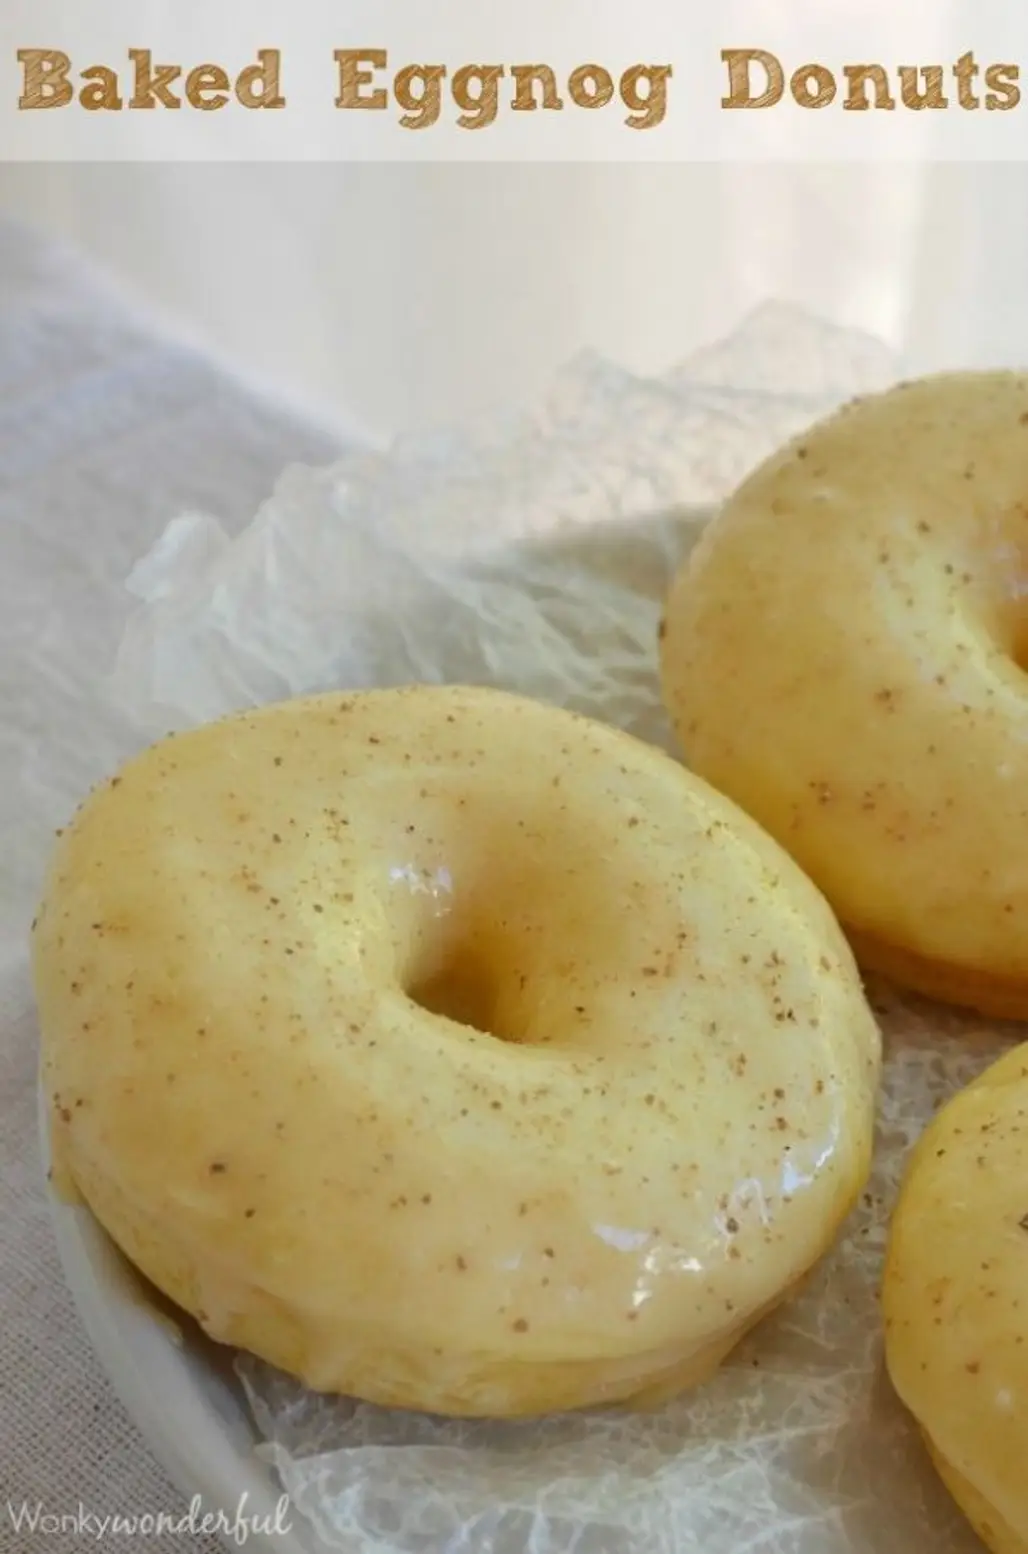 Baked Eggnog Donuts